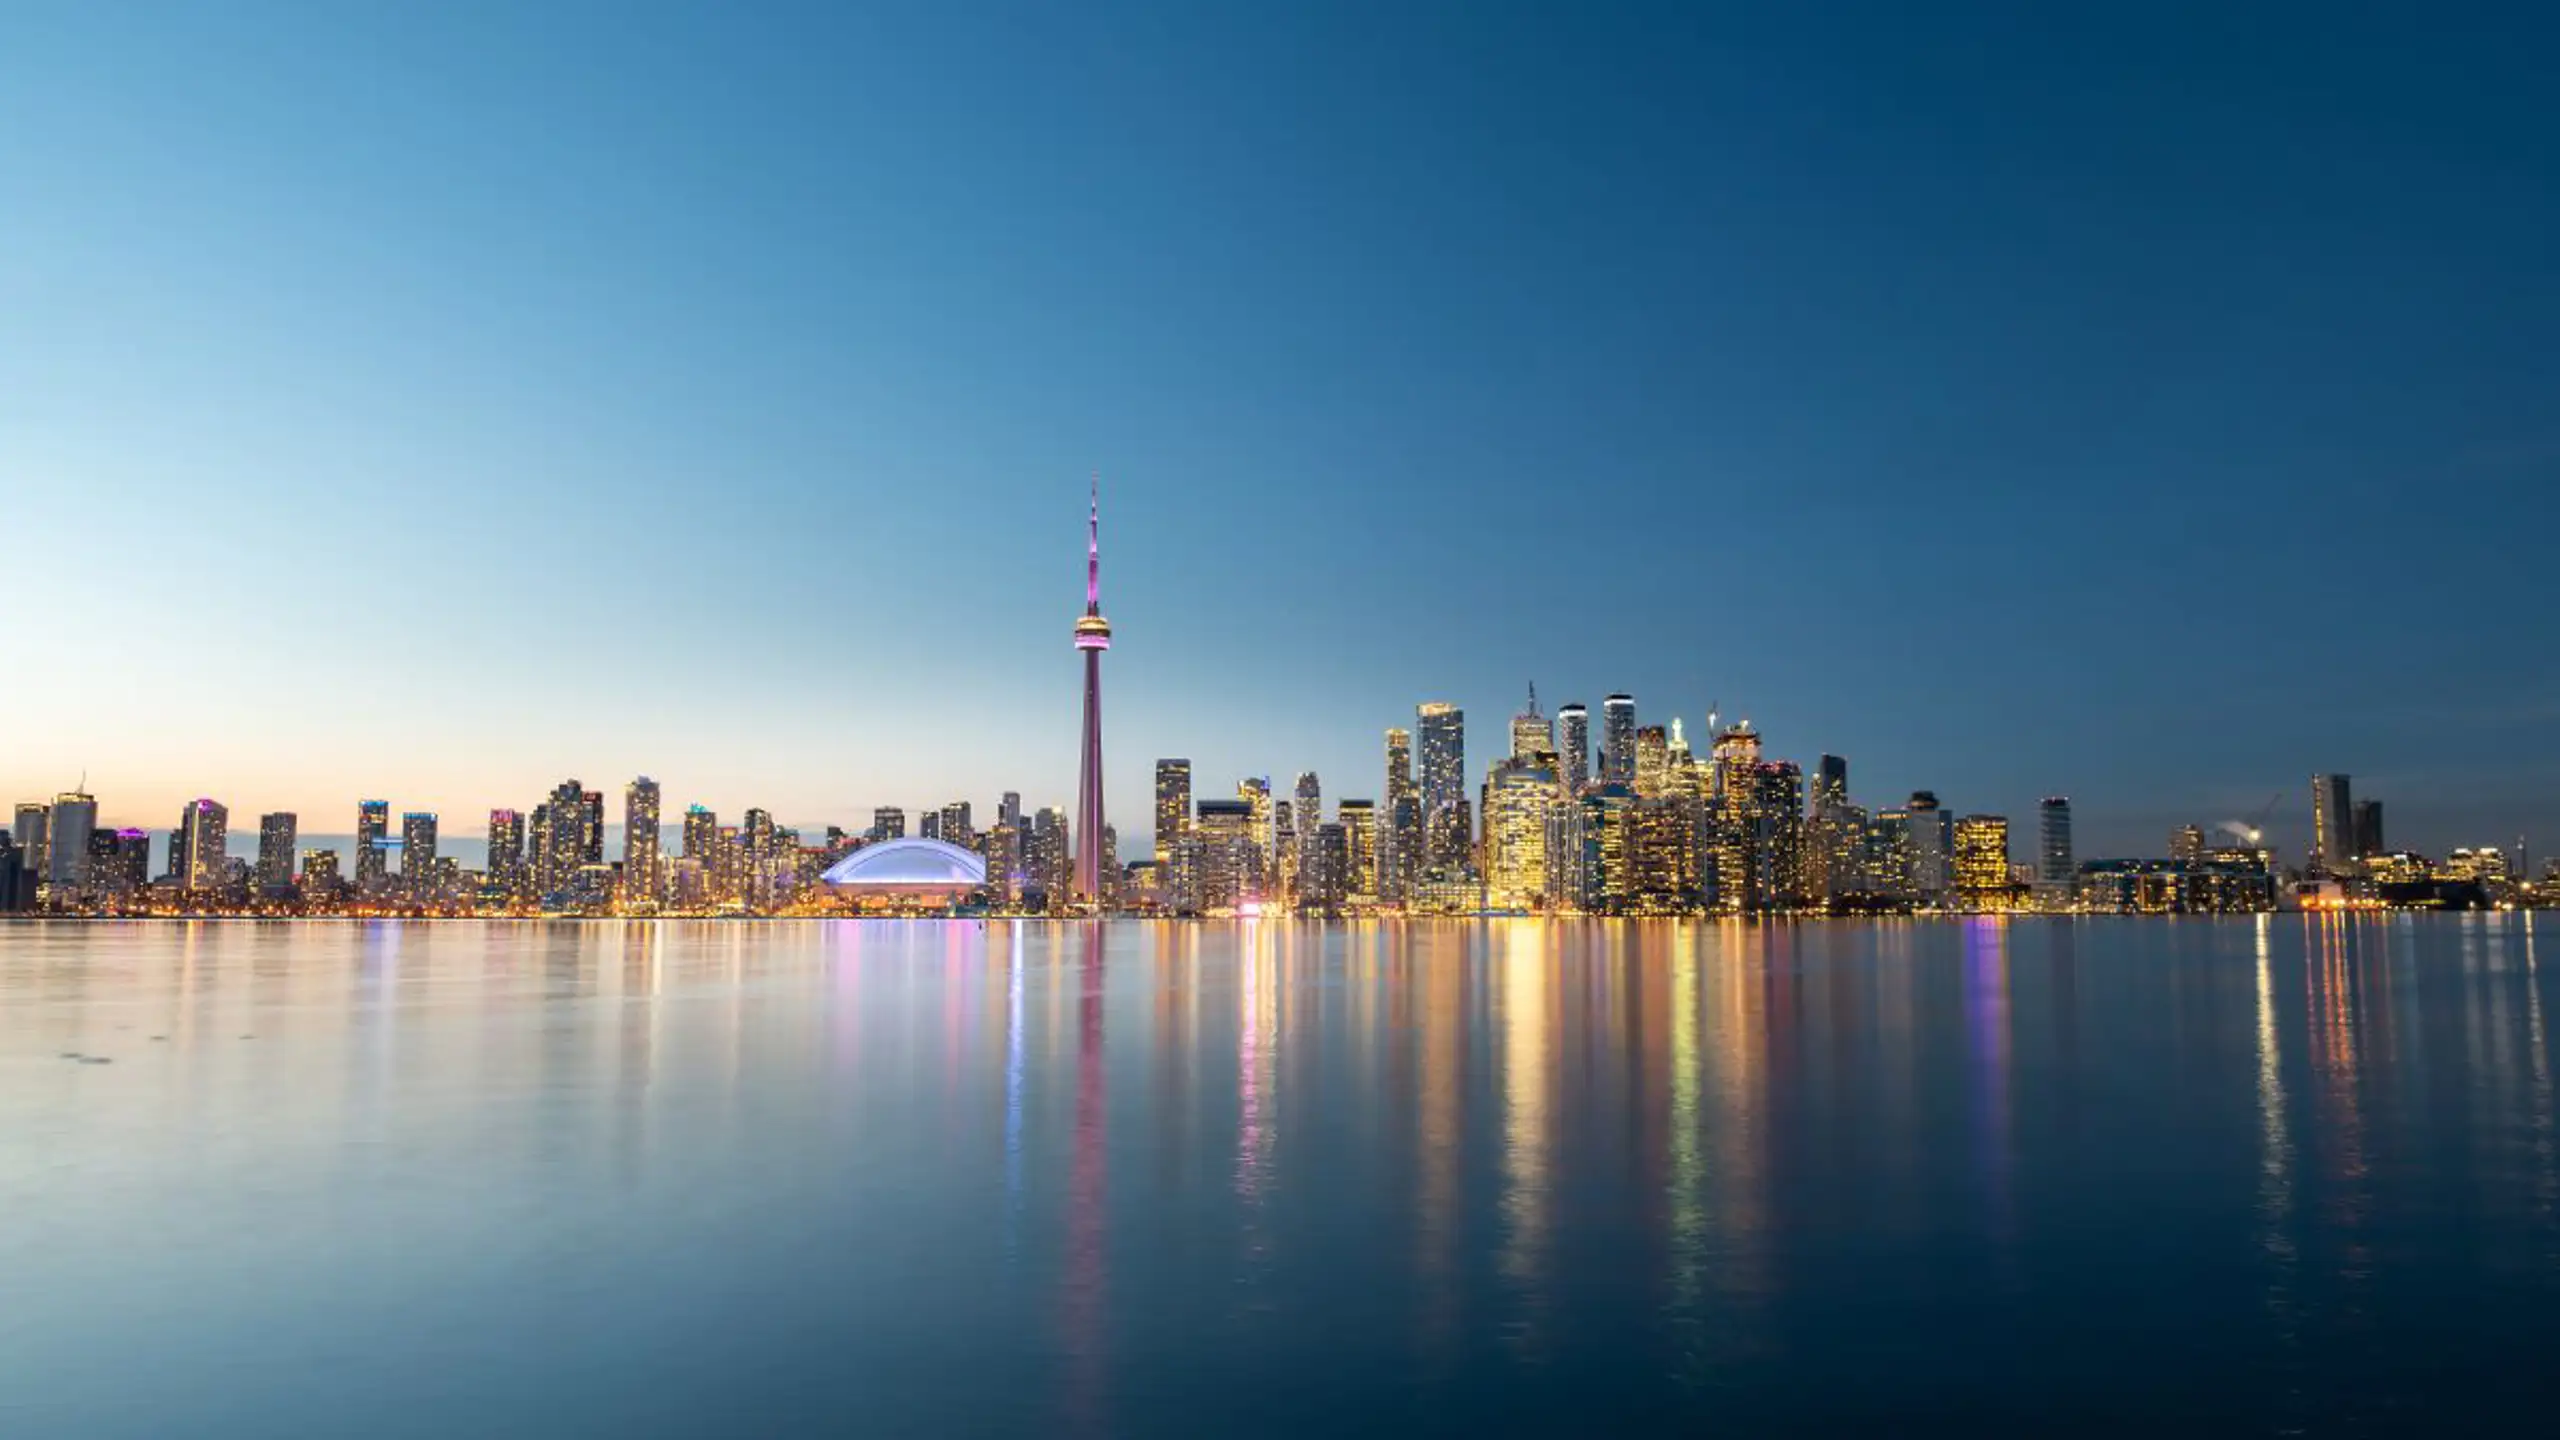 Toronto City Skyline At Night Ontario Canada 2023 11 27 05 30 08 Utc (1)